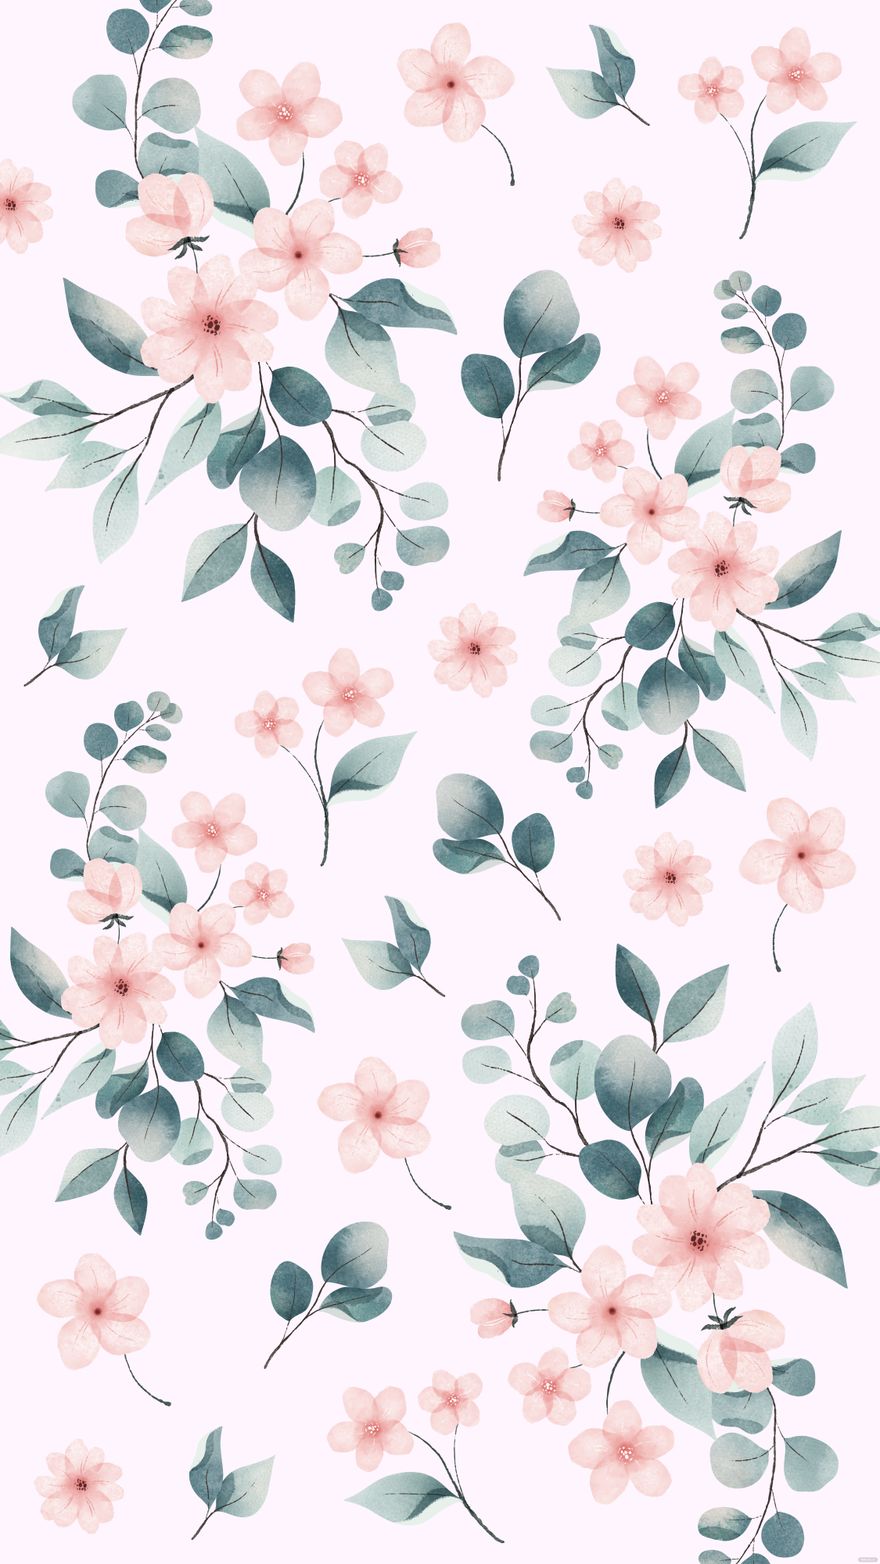 Pastel Pink Floral Background in Illustrator, SVG, JPG, EPS